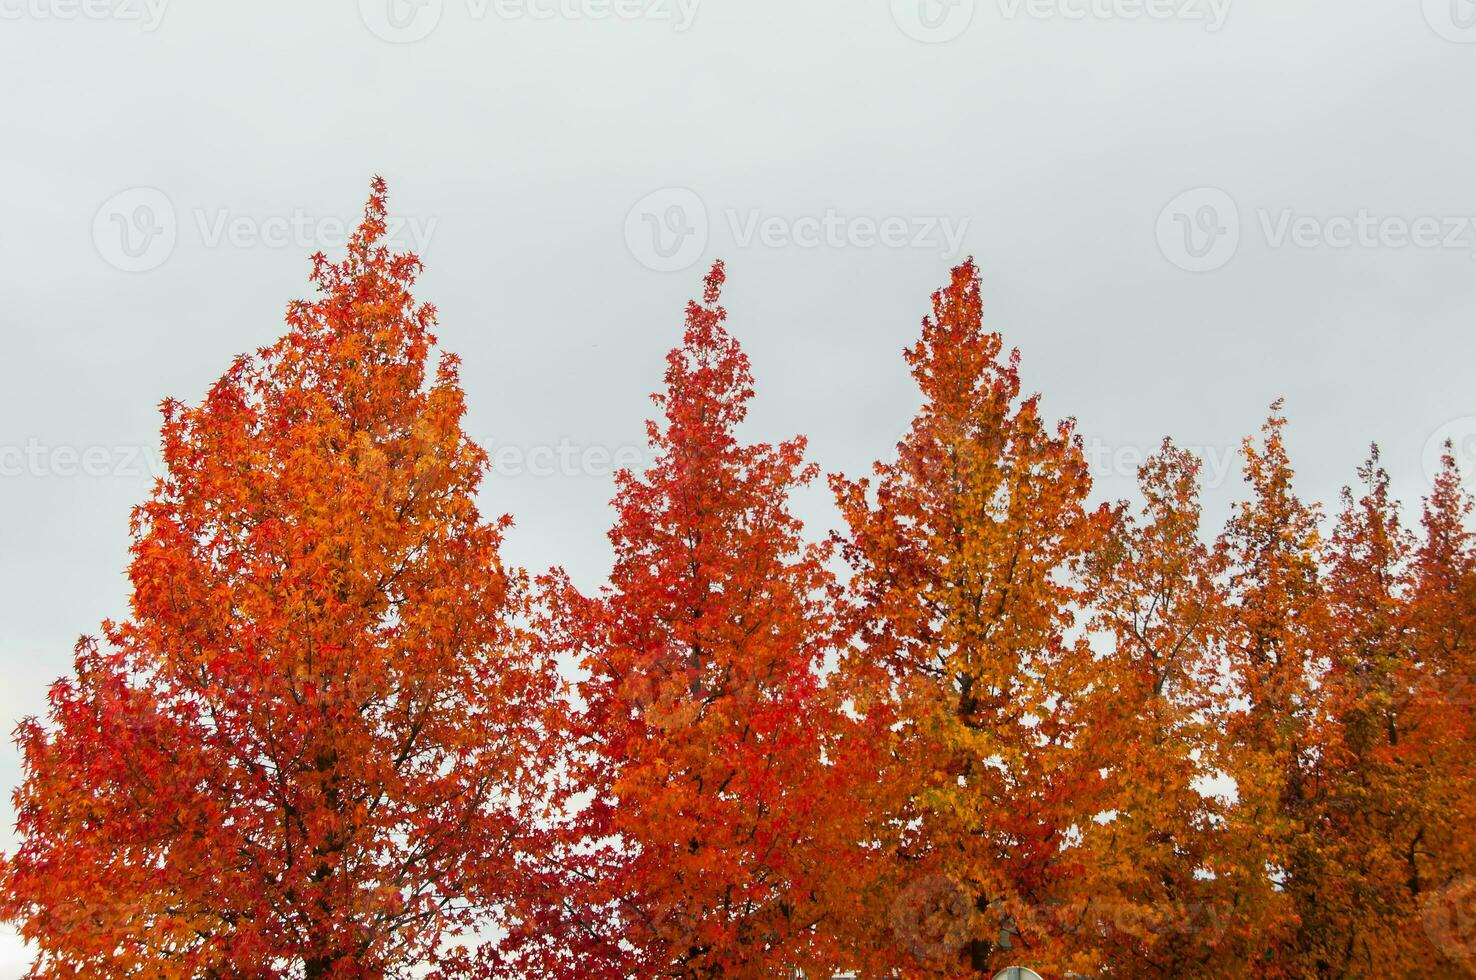 el natural belleza de otoño colores y que cae hojas foto